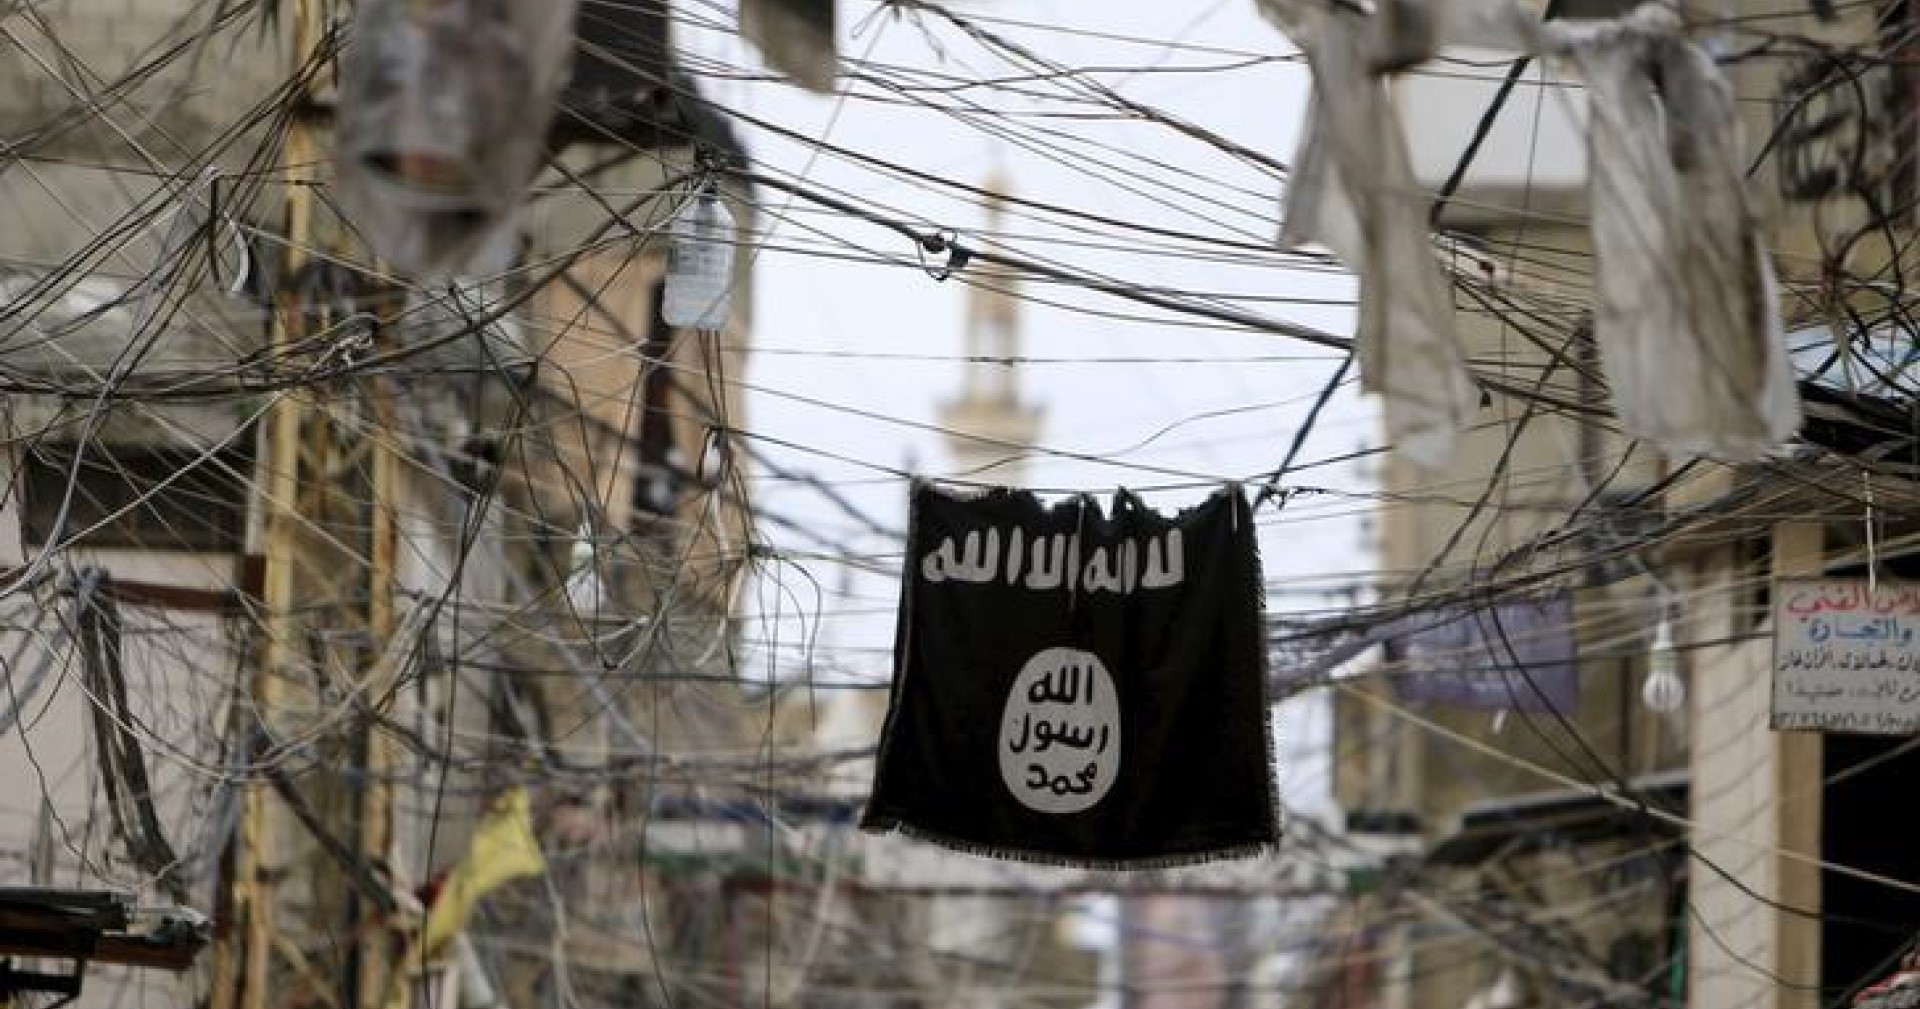 ผู้เชี่ยวชาญพบ กลุ่มก่อการร้าย Islamic State ทดลองใช้ NFT ระดมทุนเข้ากลุ่ม